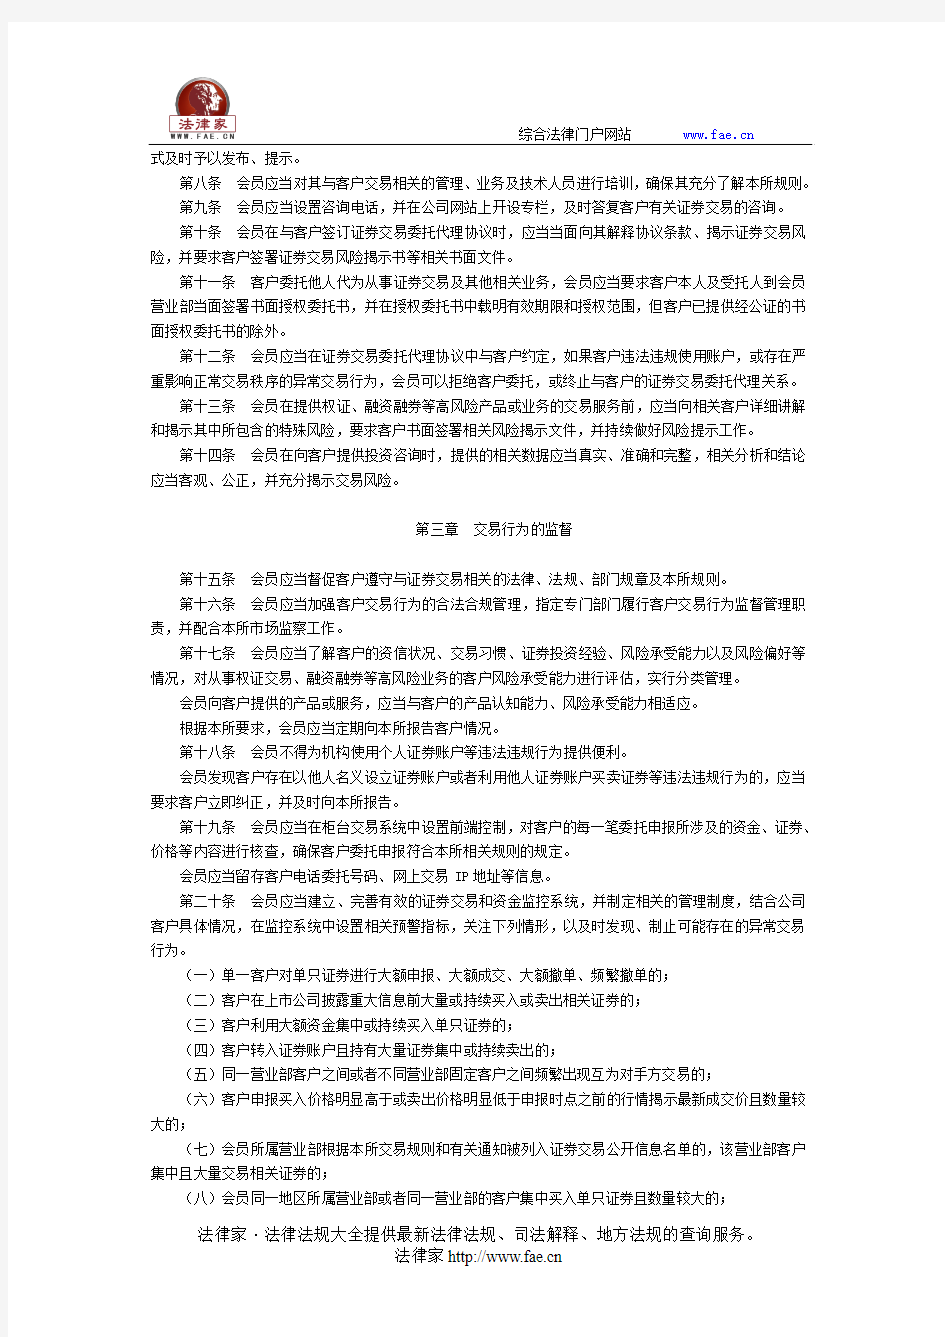 上海证券交易所关于发布《上海证券交易所会员客户证券交易行为管理实施细则(2015年修订)》的通知 -团体、